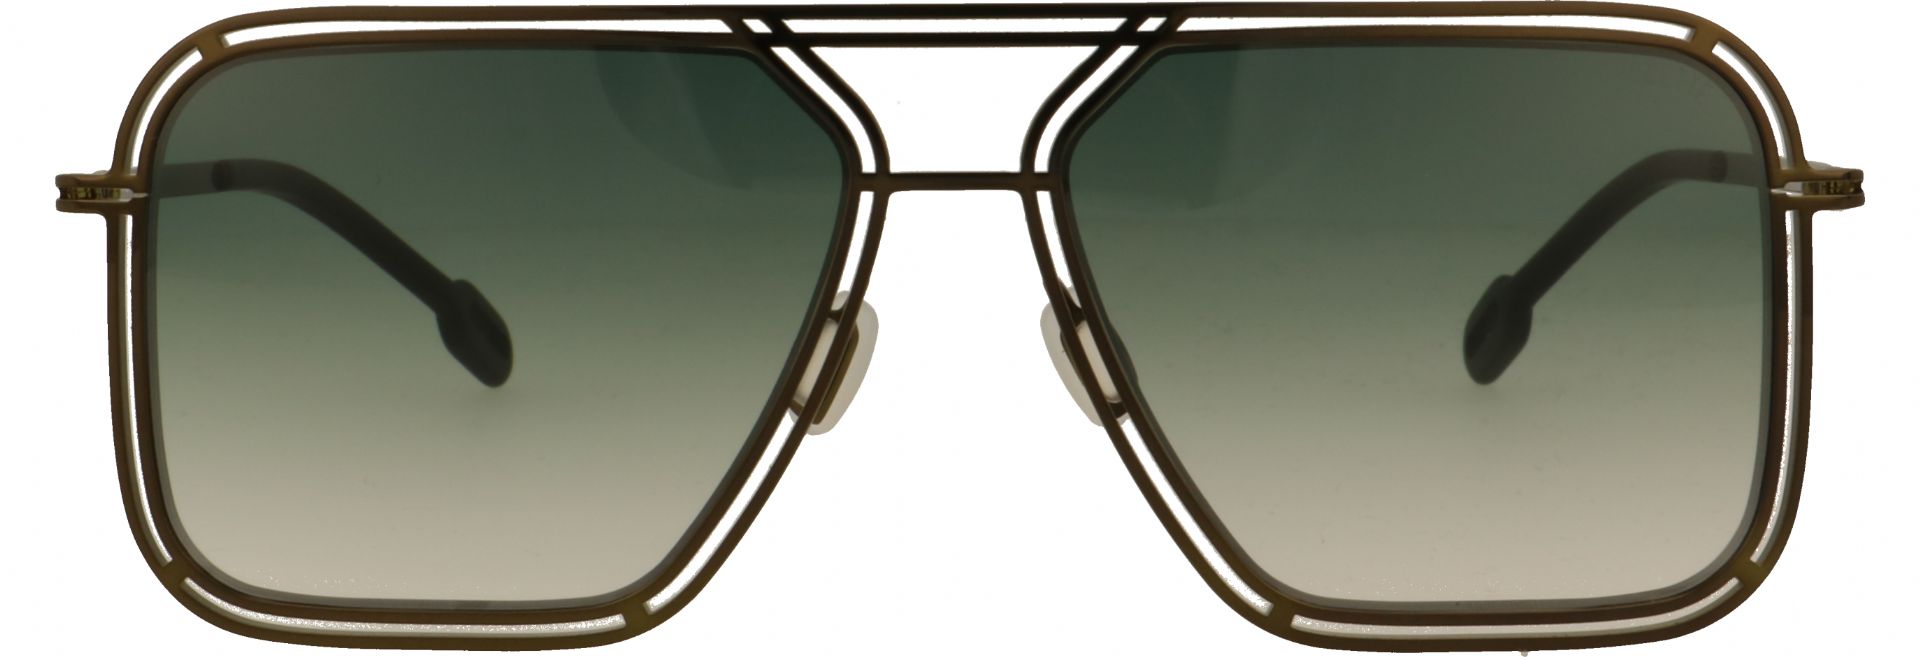 Odette lunettes Preston M3201